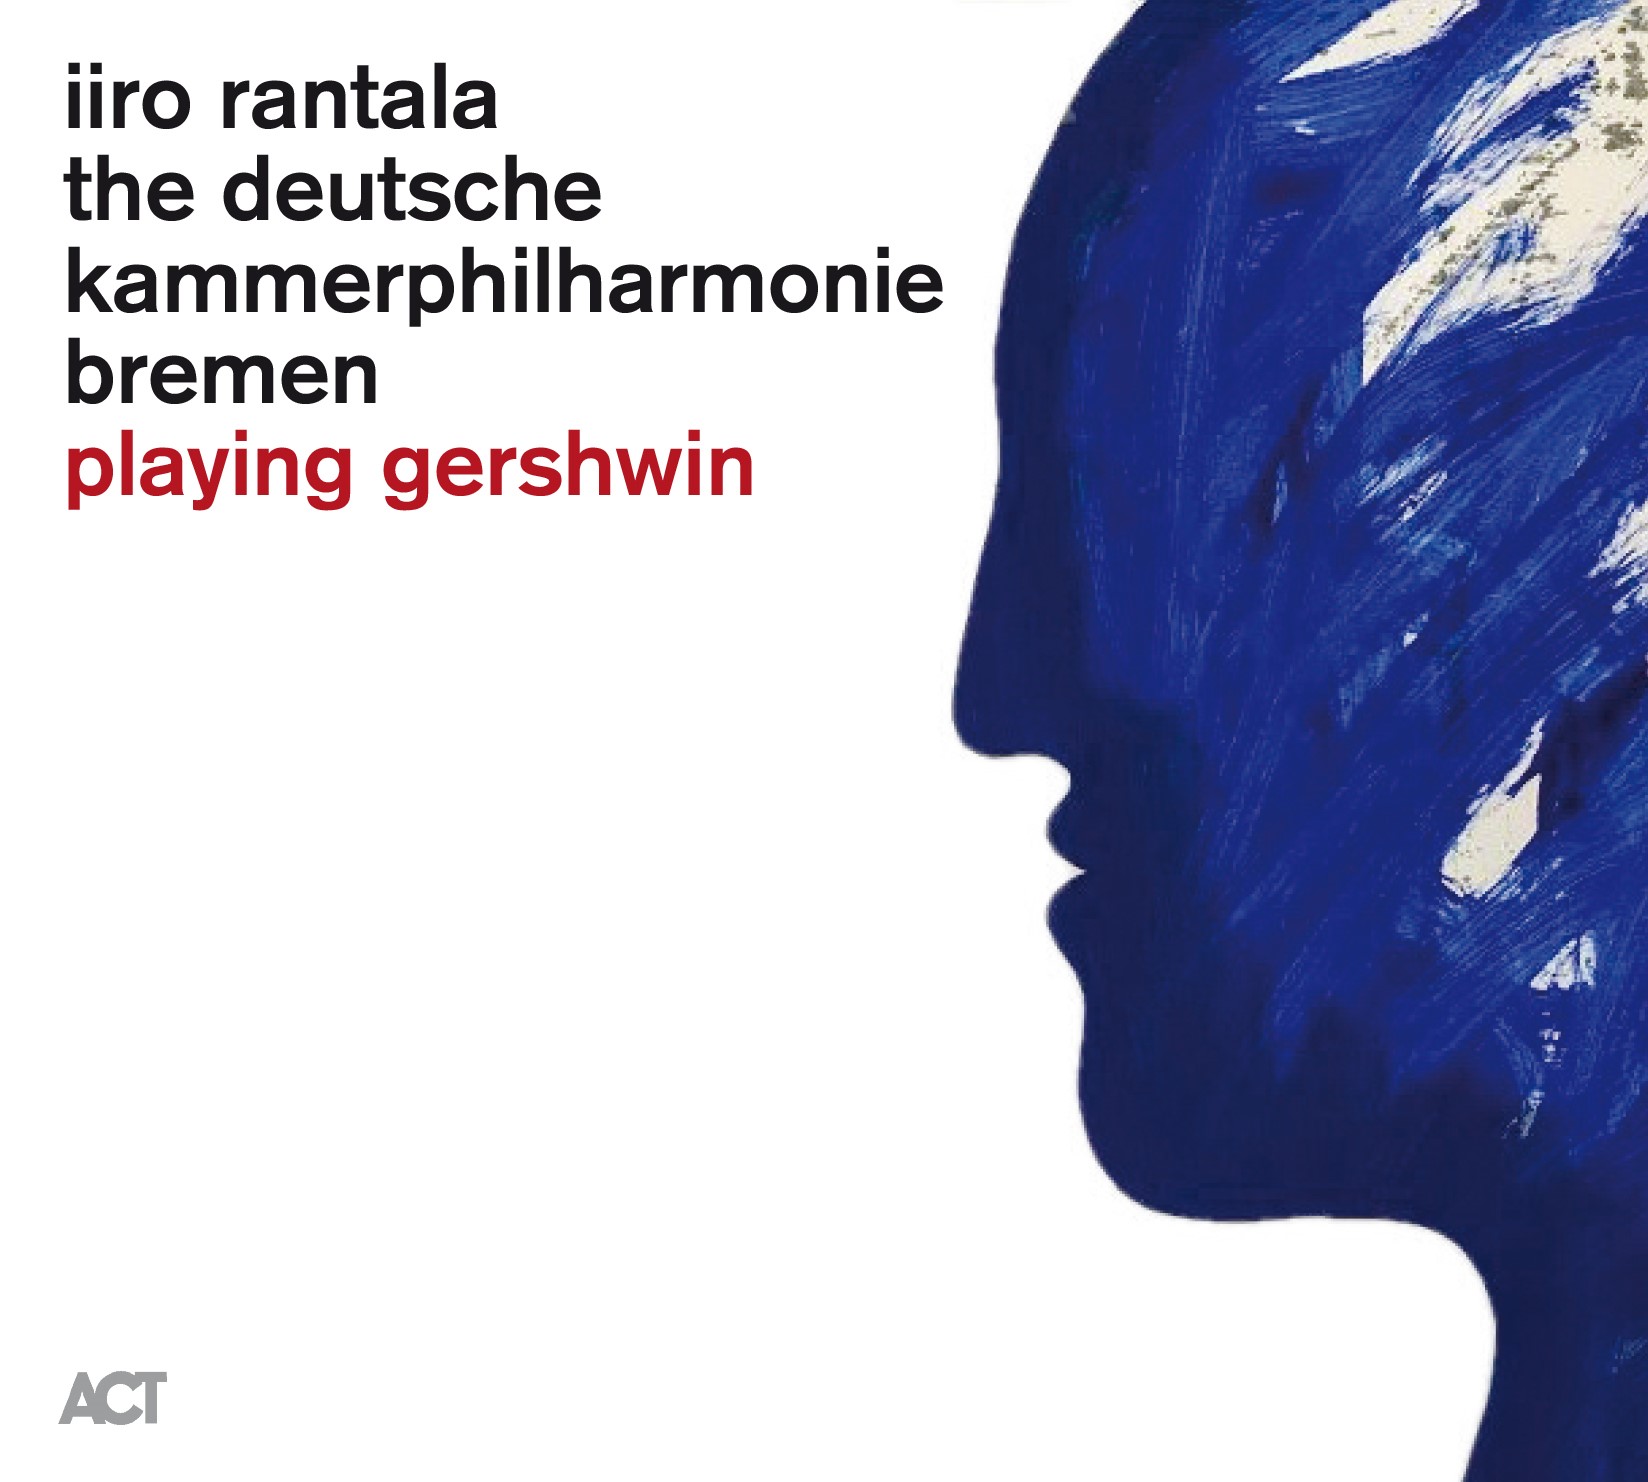 playing Gershwin